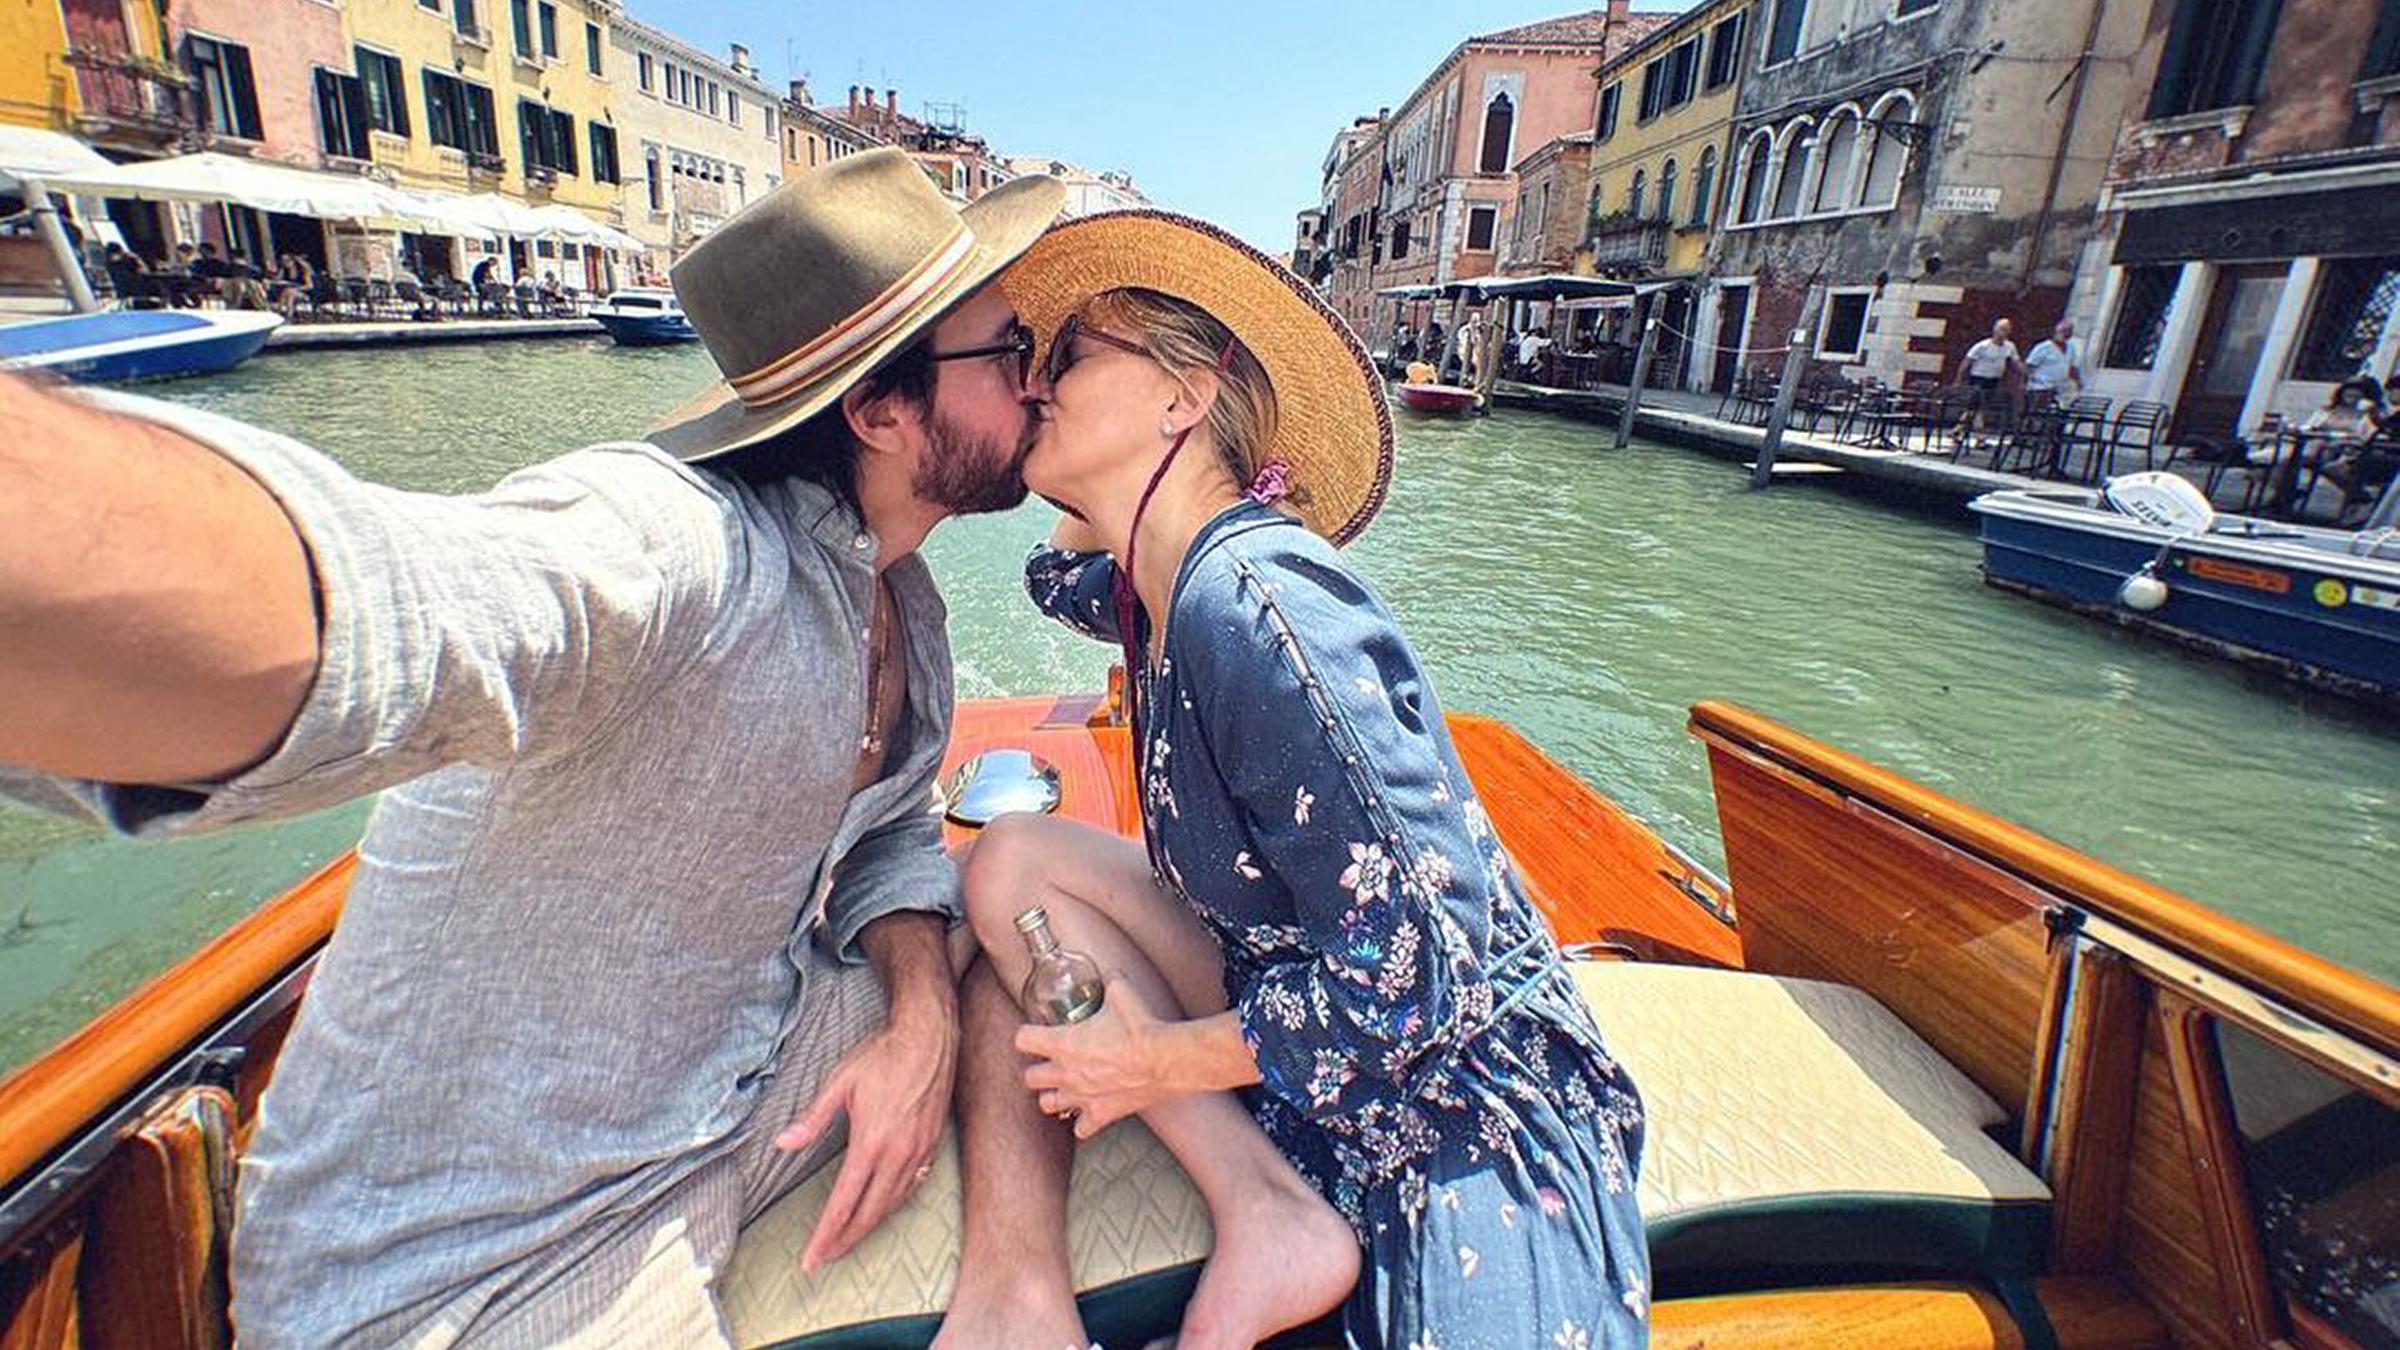 Kate Hudson küsst ihren Verlobten Danny Fujikawa auf einem Boot in Venedig.